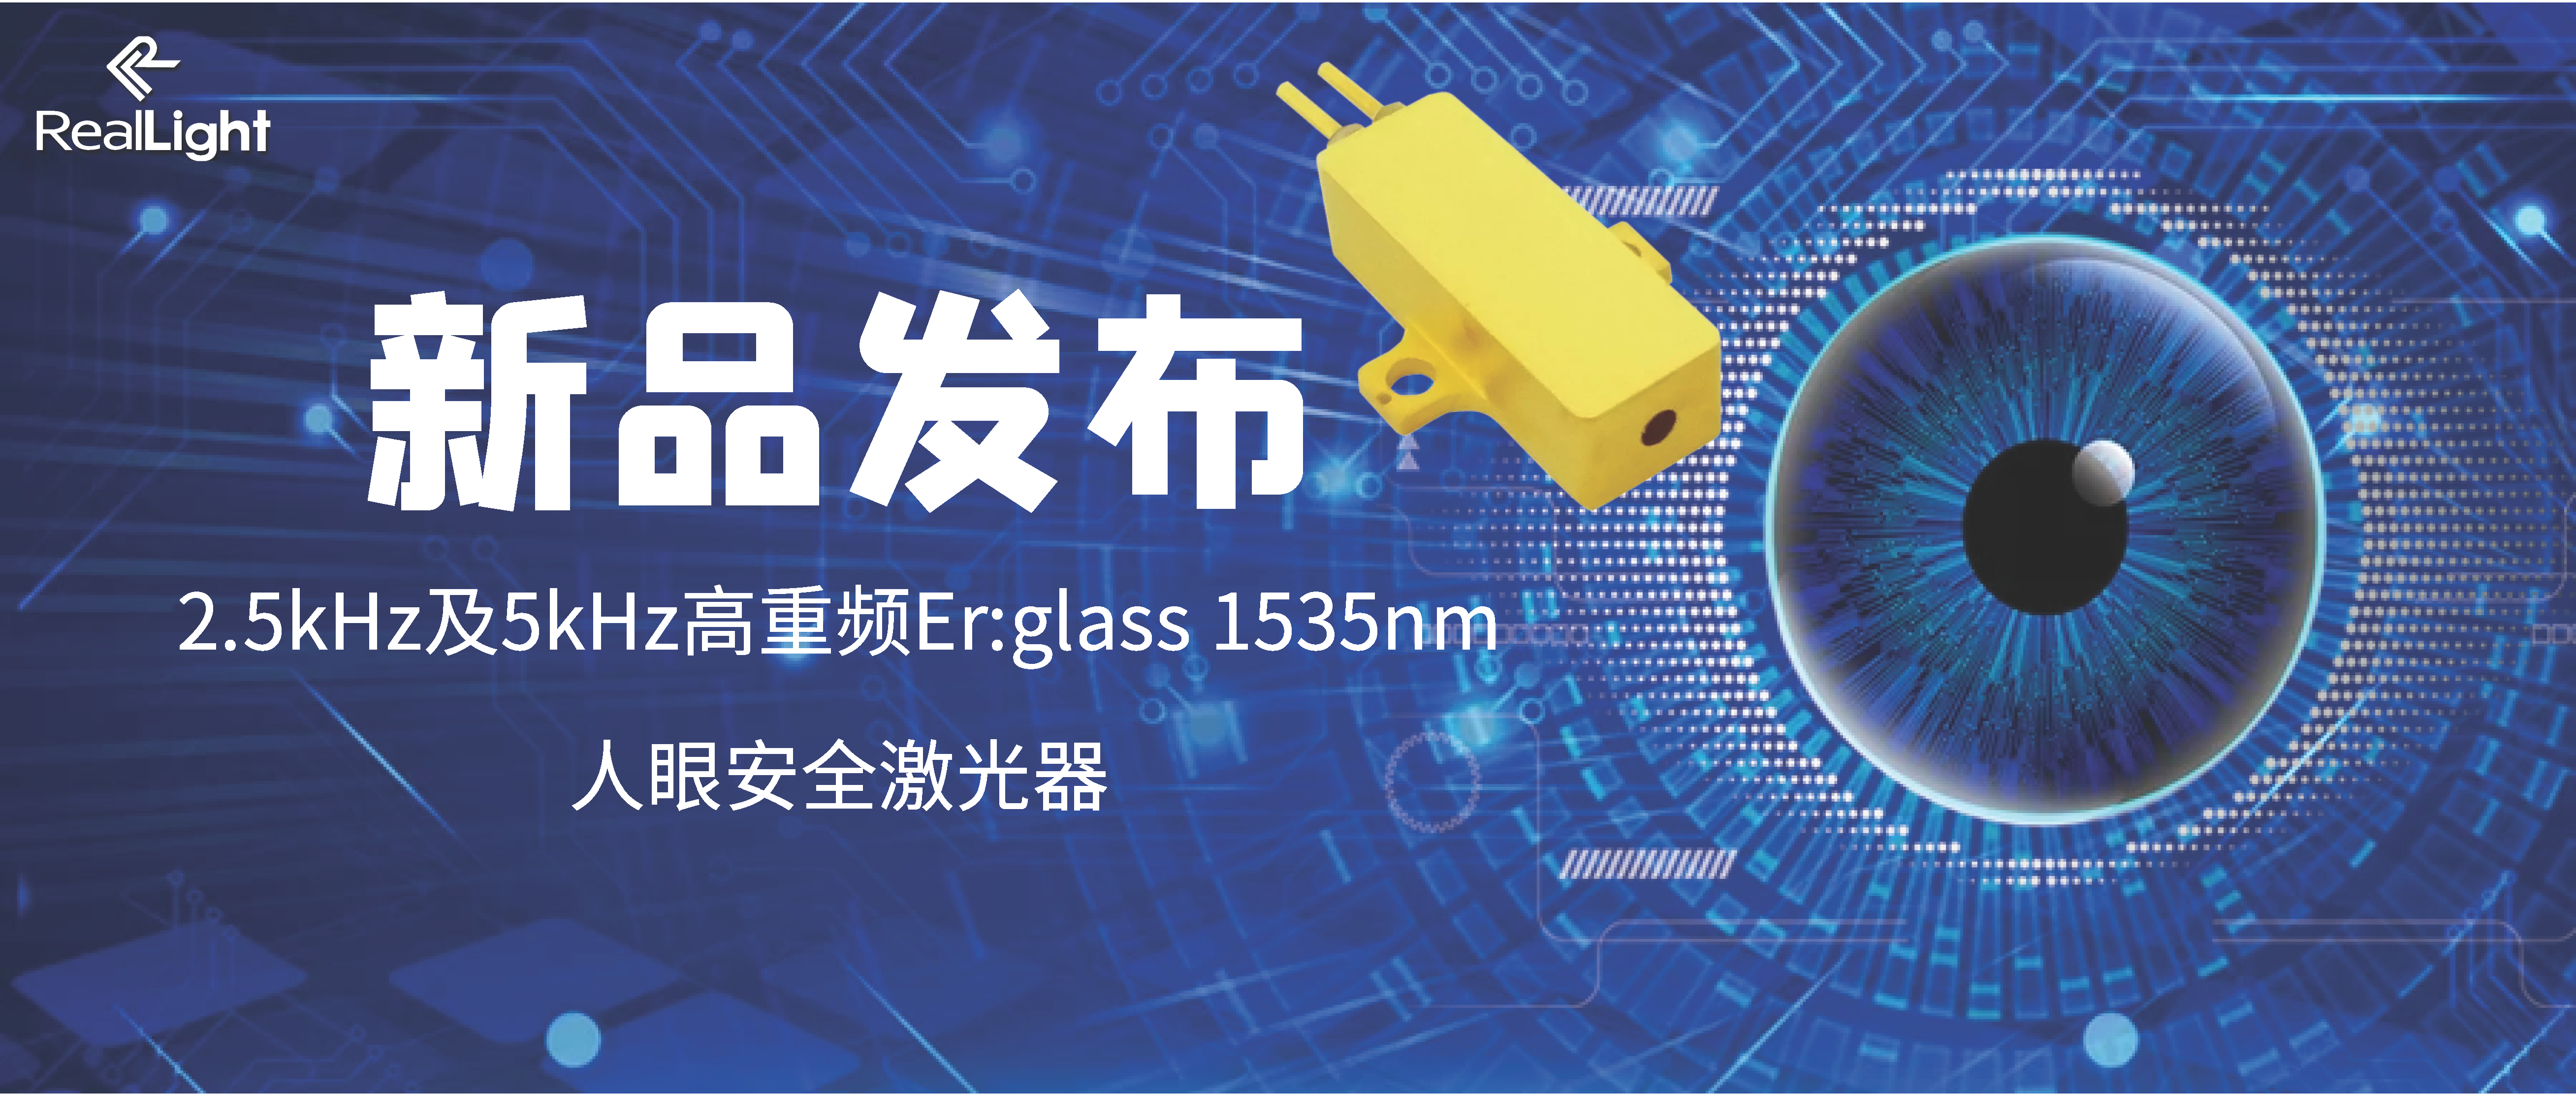 新品宣布：2.5kHz及5kHz高重频Er:glass 1535nm人眼宁静激光器